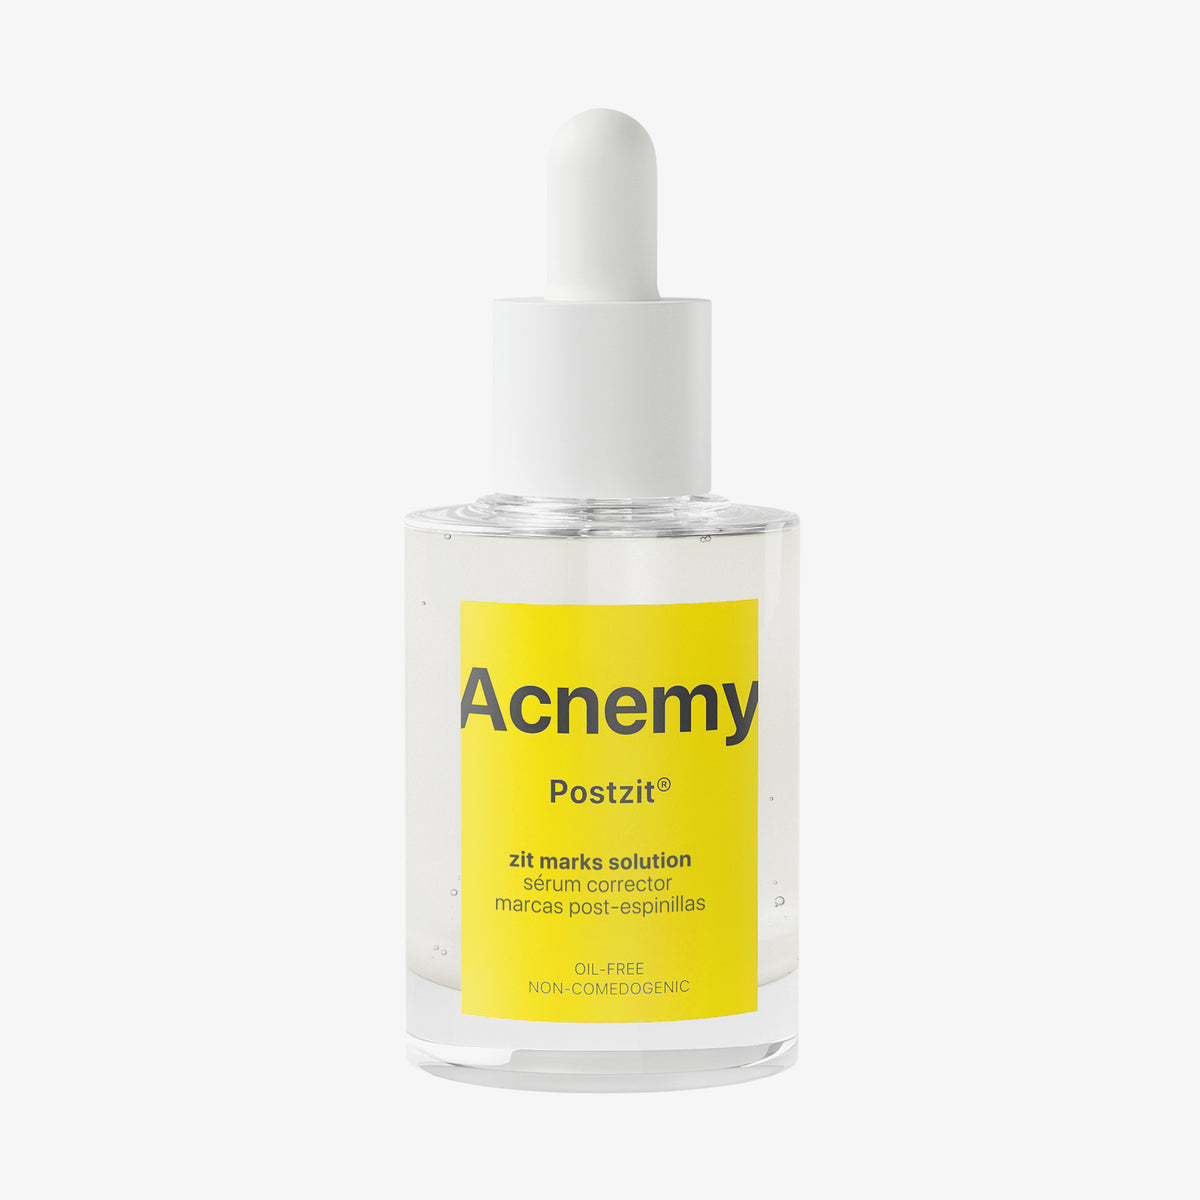 Eine Flasche Acnemy Postzit® vor weißem Hintergrund